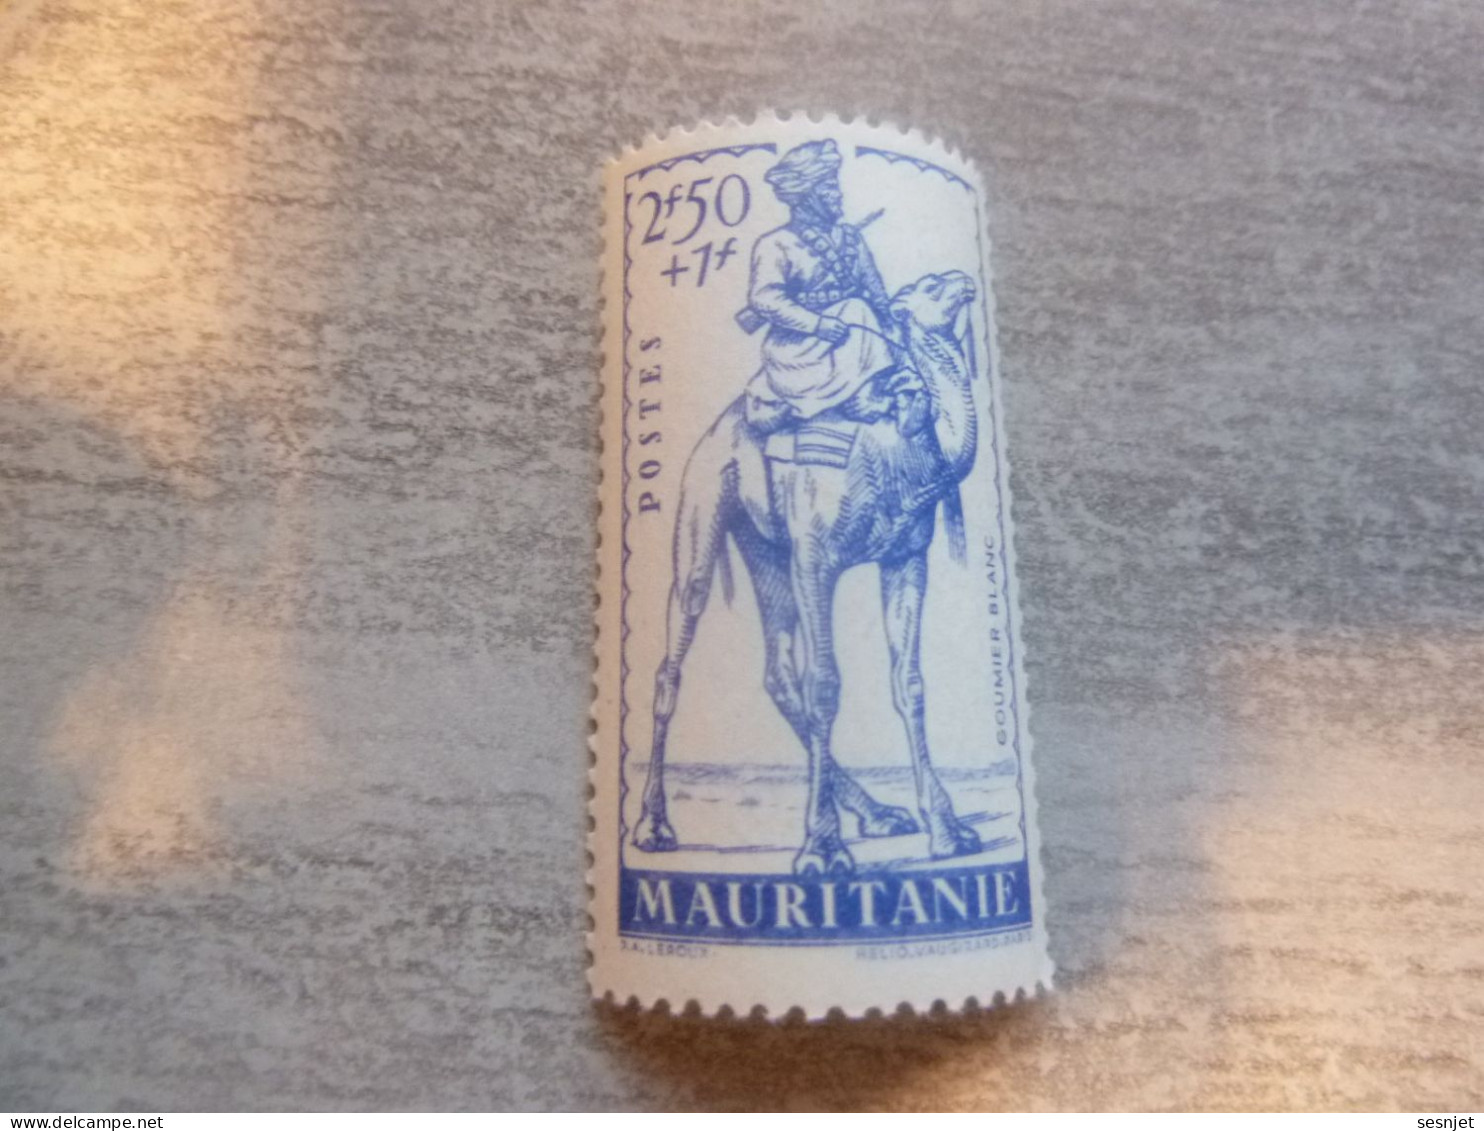 Mauritanie - Défense De L'Empire - Goumier Blanc - 2f.50+1f. - Yt 118 - Bleu - Neuf Sans Trace - Année 1941 - - Unused Stamps